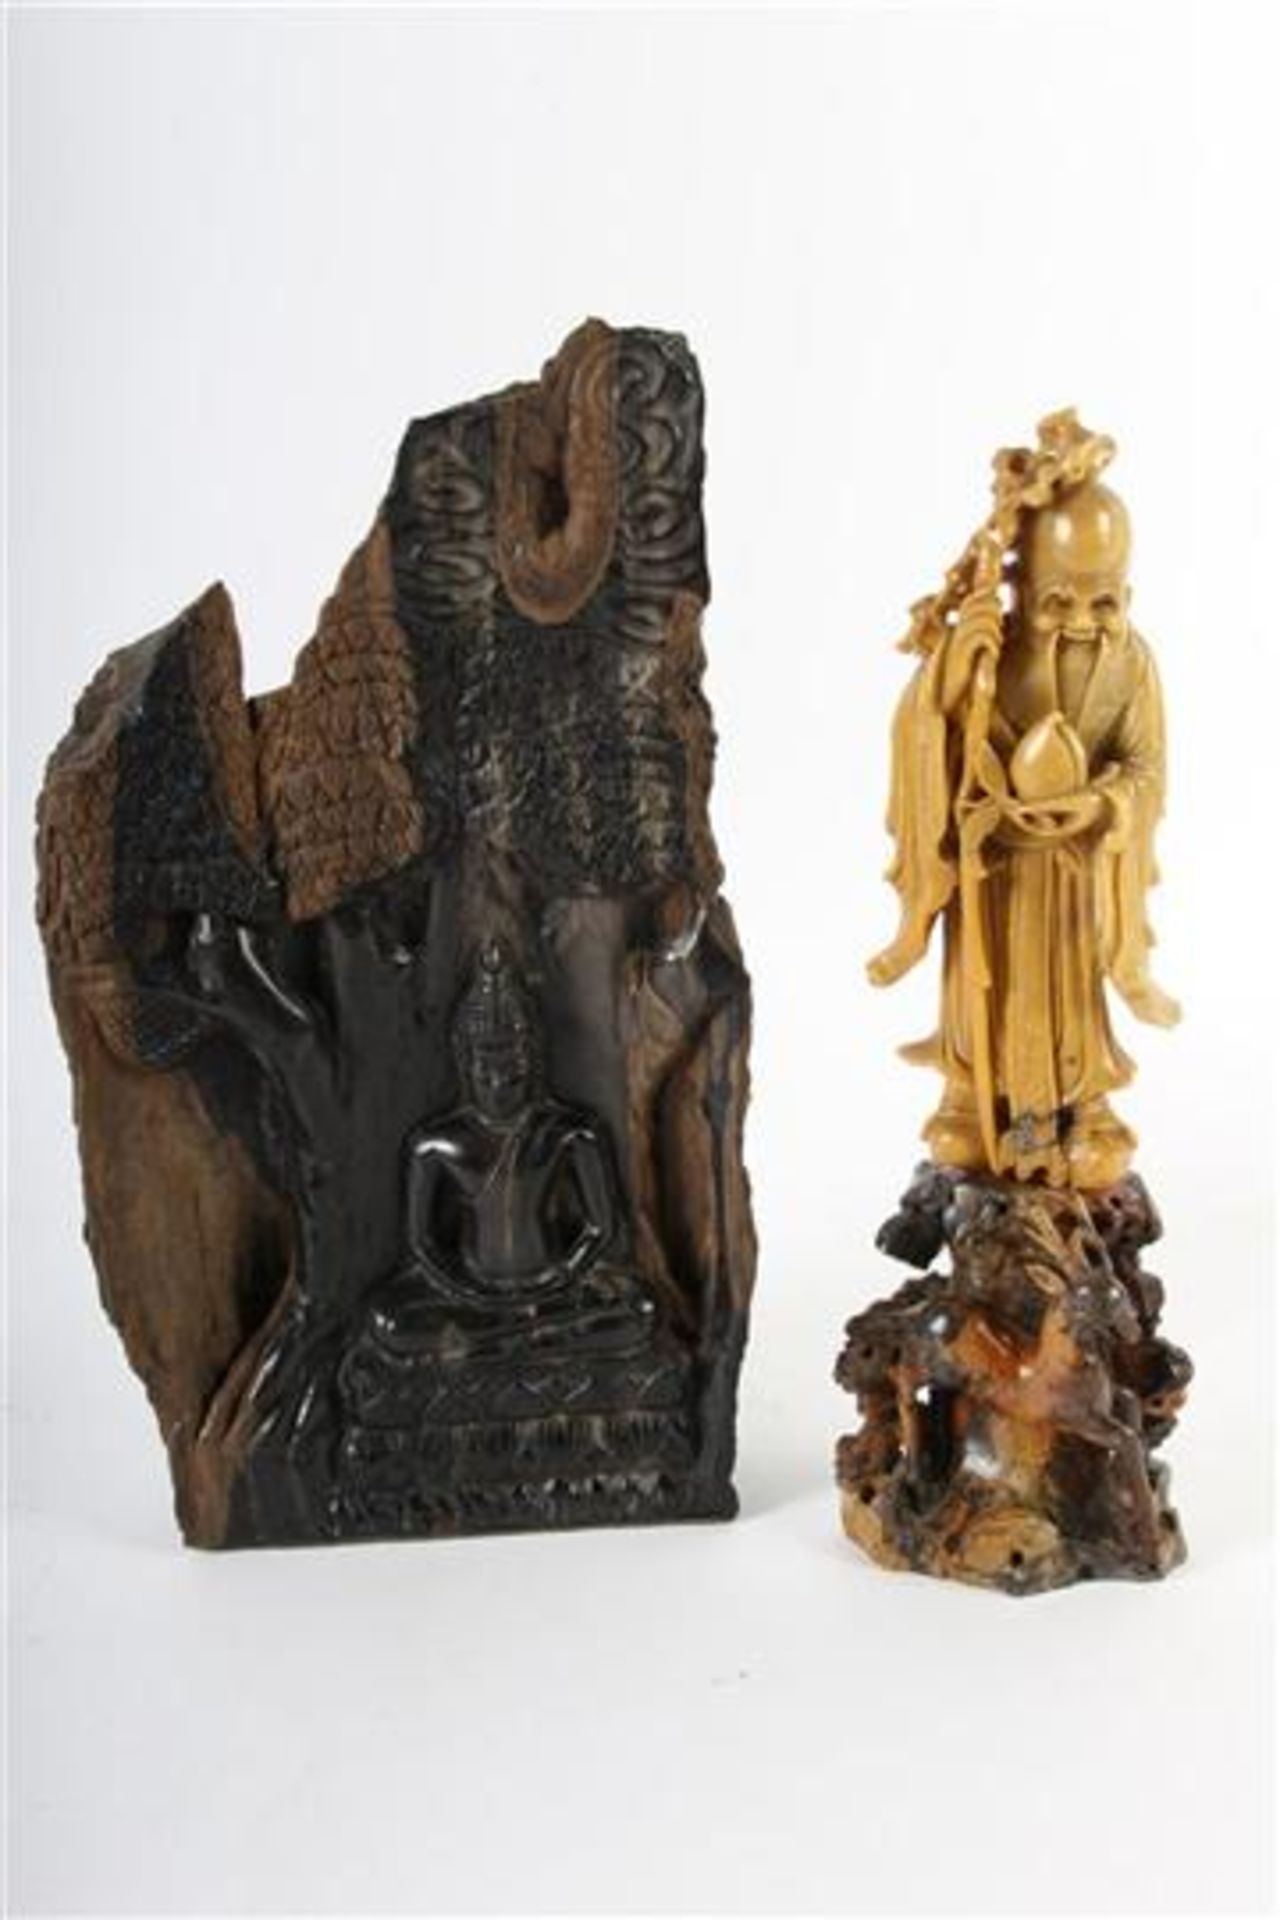 Spekstenen beeldje van wijze man. Toegevoegd Boeddha sculptuur.